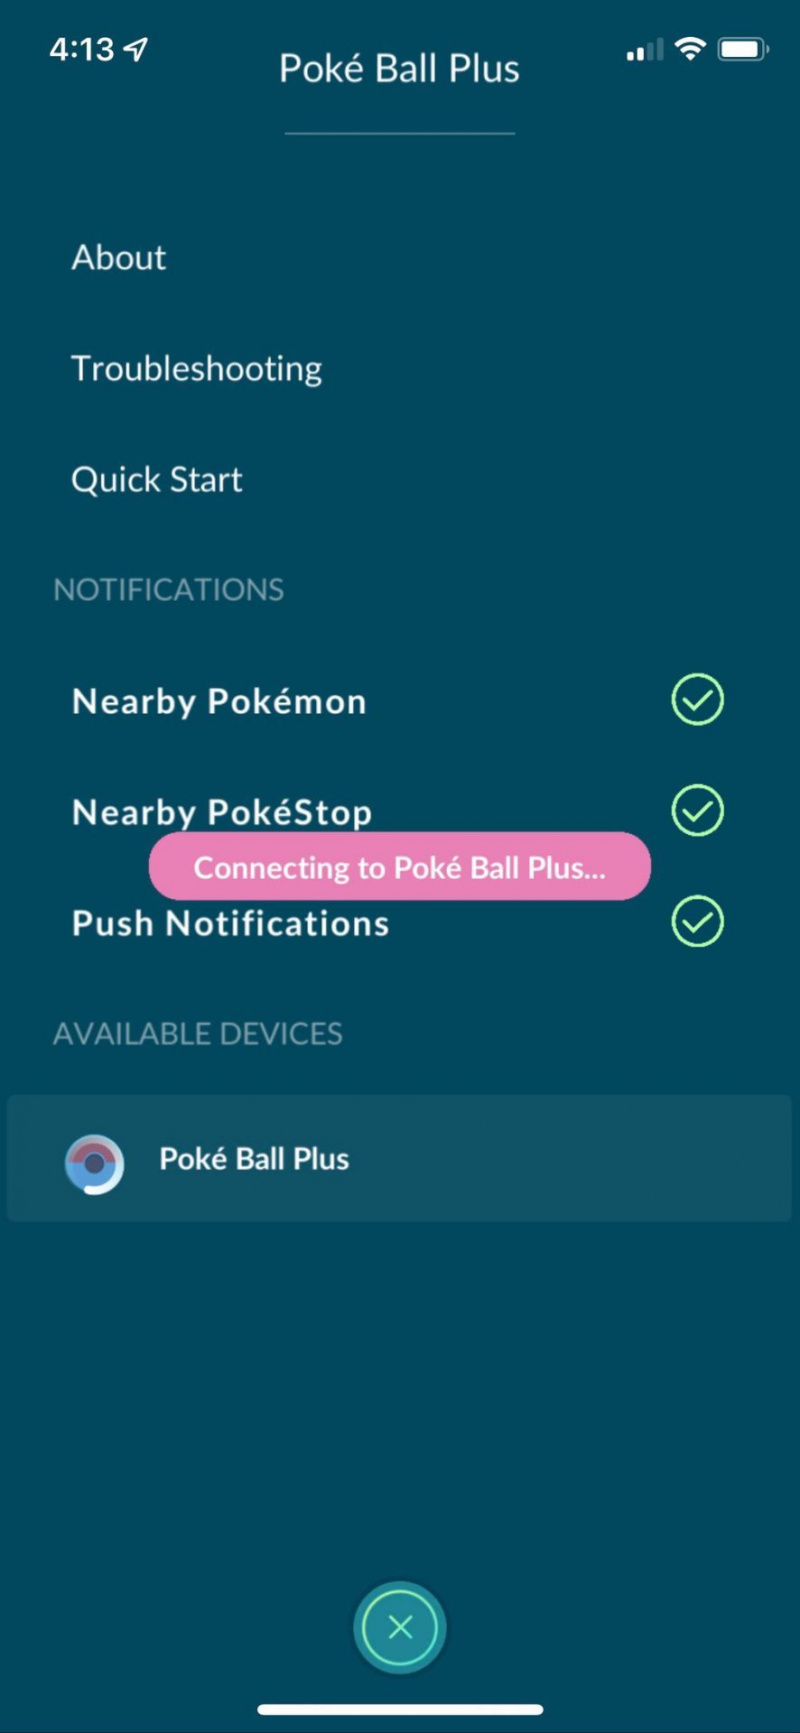   قم بتوصيل Poke Ball Plus بـ Pokémon Go بمجرد العثور عليه ، حدد Poke Ball Plus